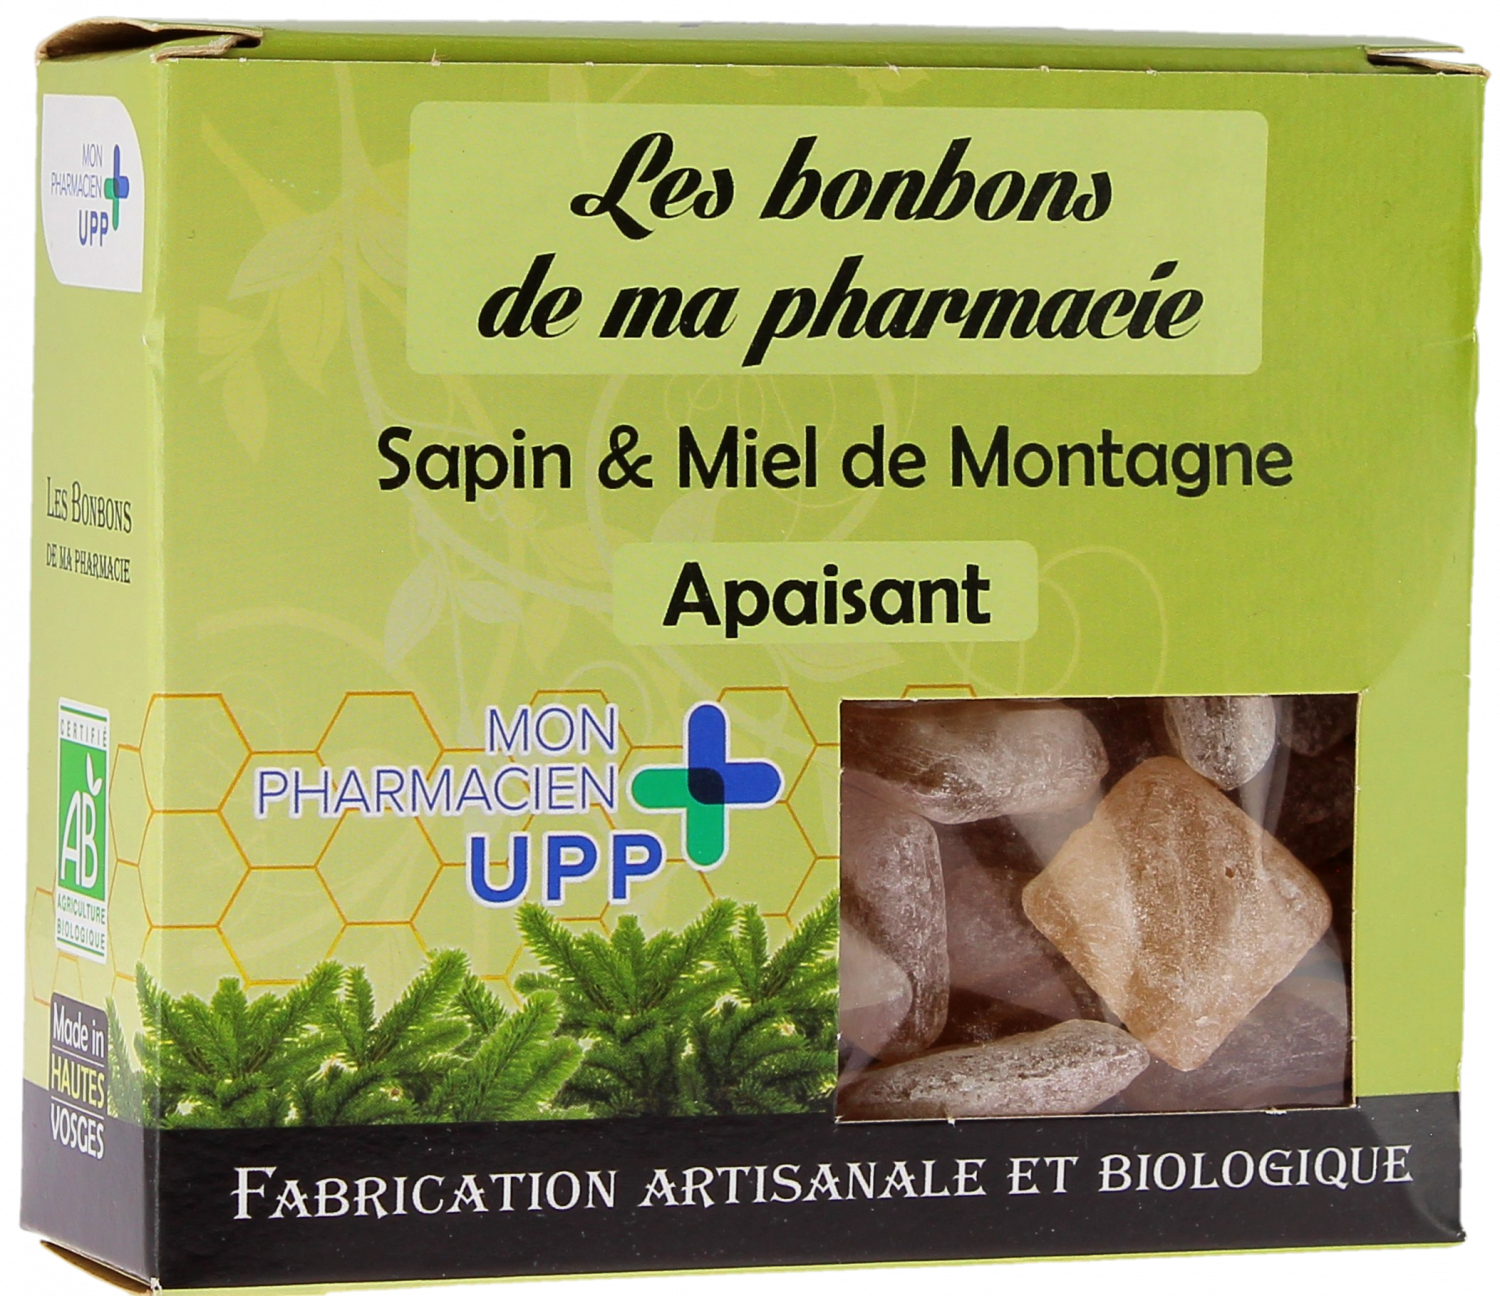 Bonbons Sapin & Miel de montagne apaisants Les bonbons de ma pharmacie - boite de 130g